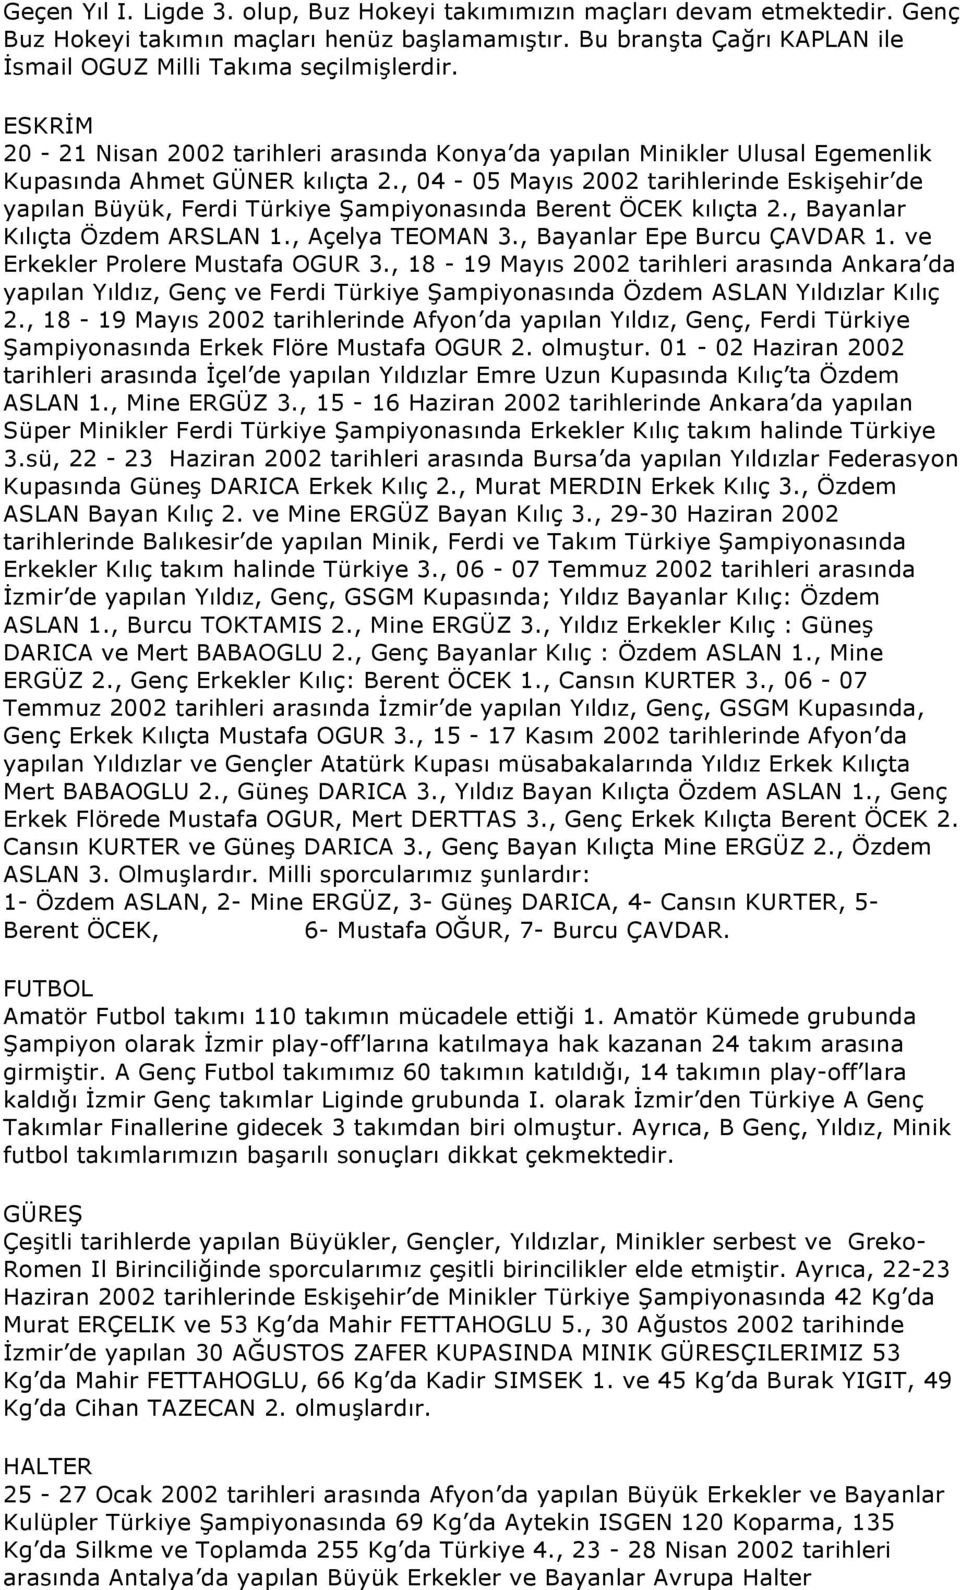 , 04-05 Mayıs 2002 tarihlerinde Eskişehir de yapılan Büyük, Ferdi Türkiye Şampiyonasında Berent ÖCEK kılıçta 2., Bayanlar Kılıçta Özdem ARSLAN 1., Açelya TEOMAN 3., Bayanlar Epe Burcu ÇAVDAR 1.